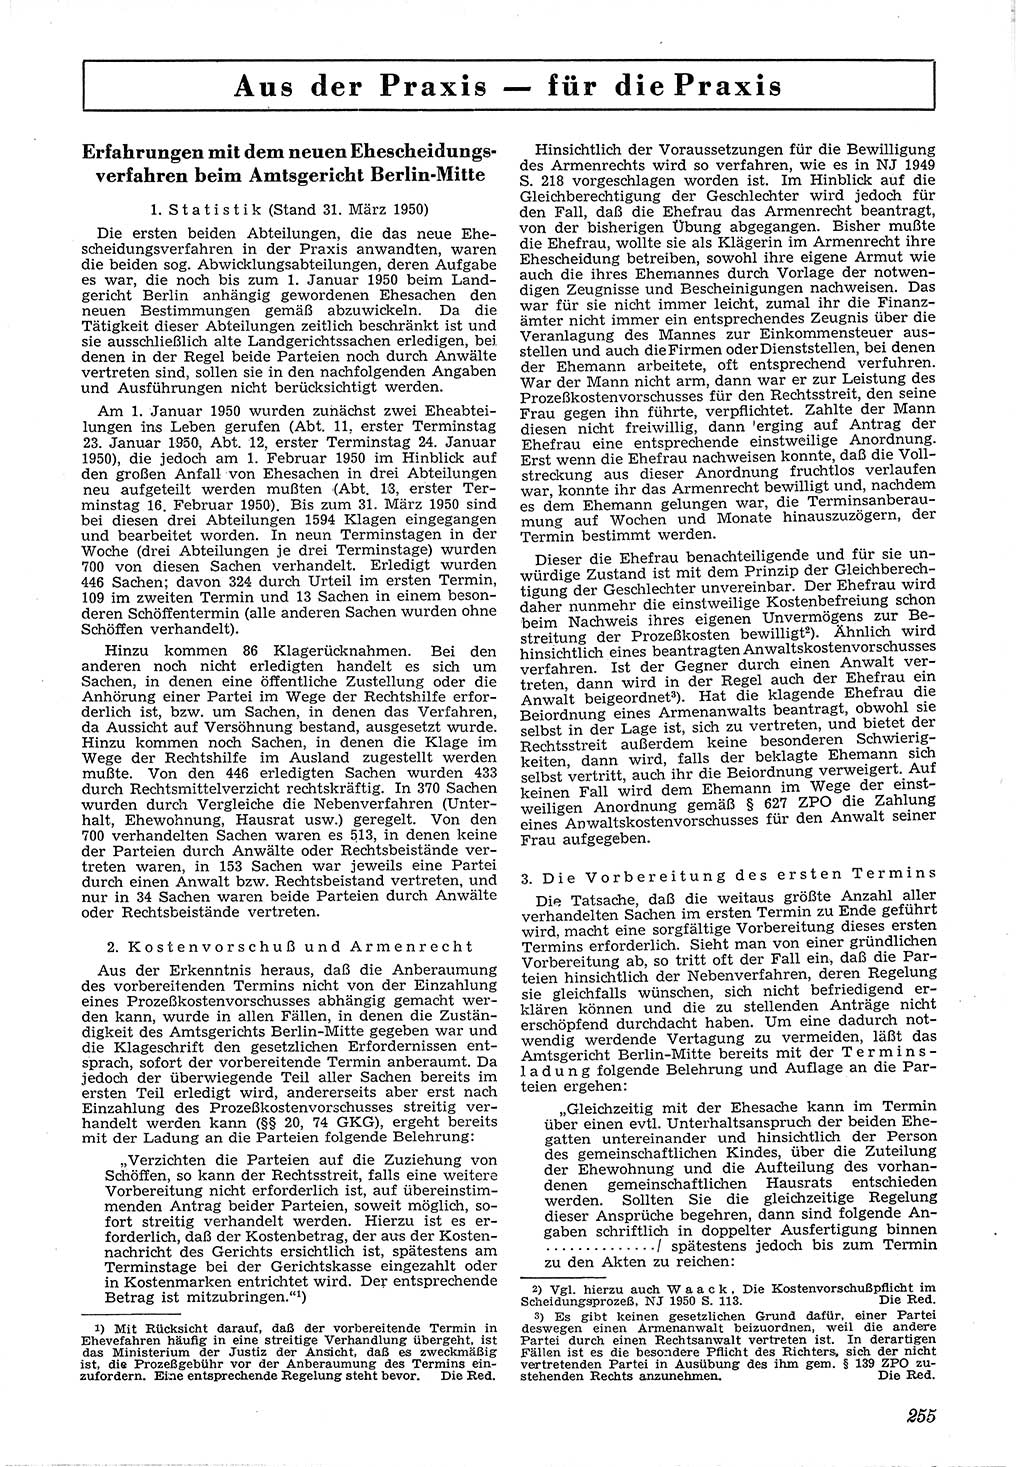 Neue Justiz (NJ), Zeitschrift für Recht und Rechtswissenschaft [Deutsche Demokratische Republik (DDR)], 4. Jahrgang 1950, Seite 255 (NJ DDR 1950, S. 255)